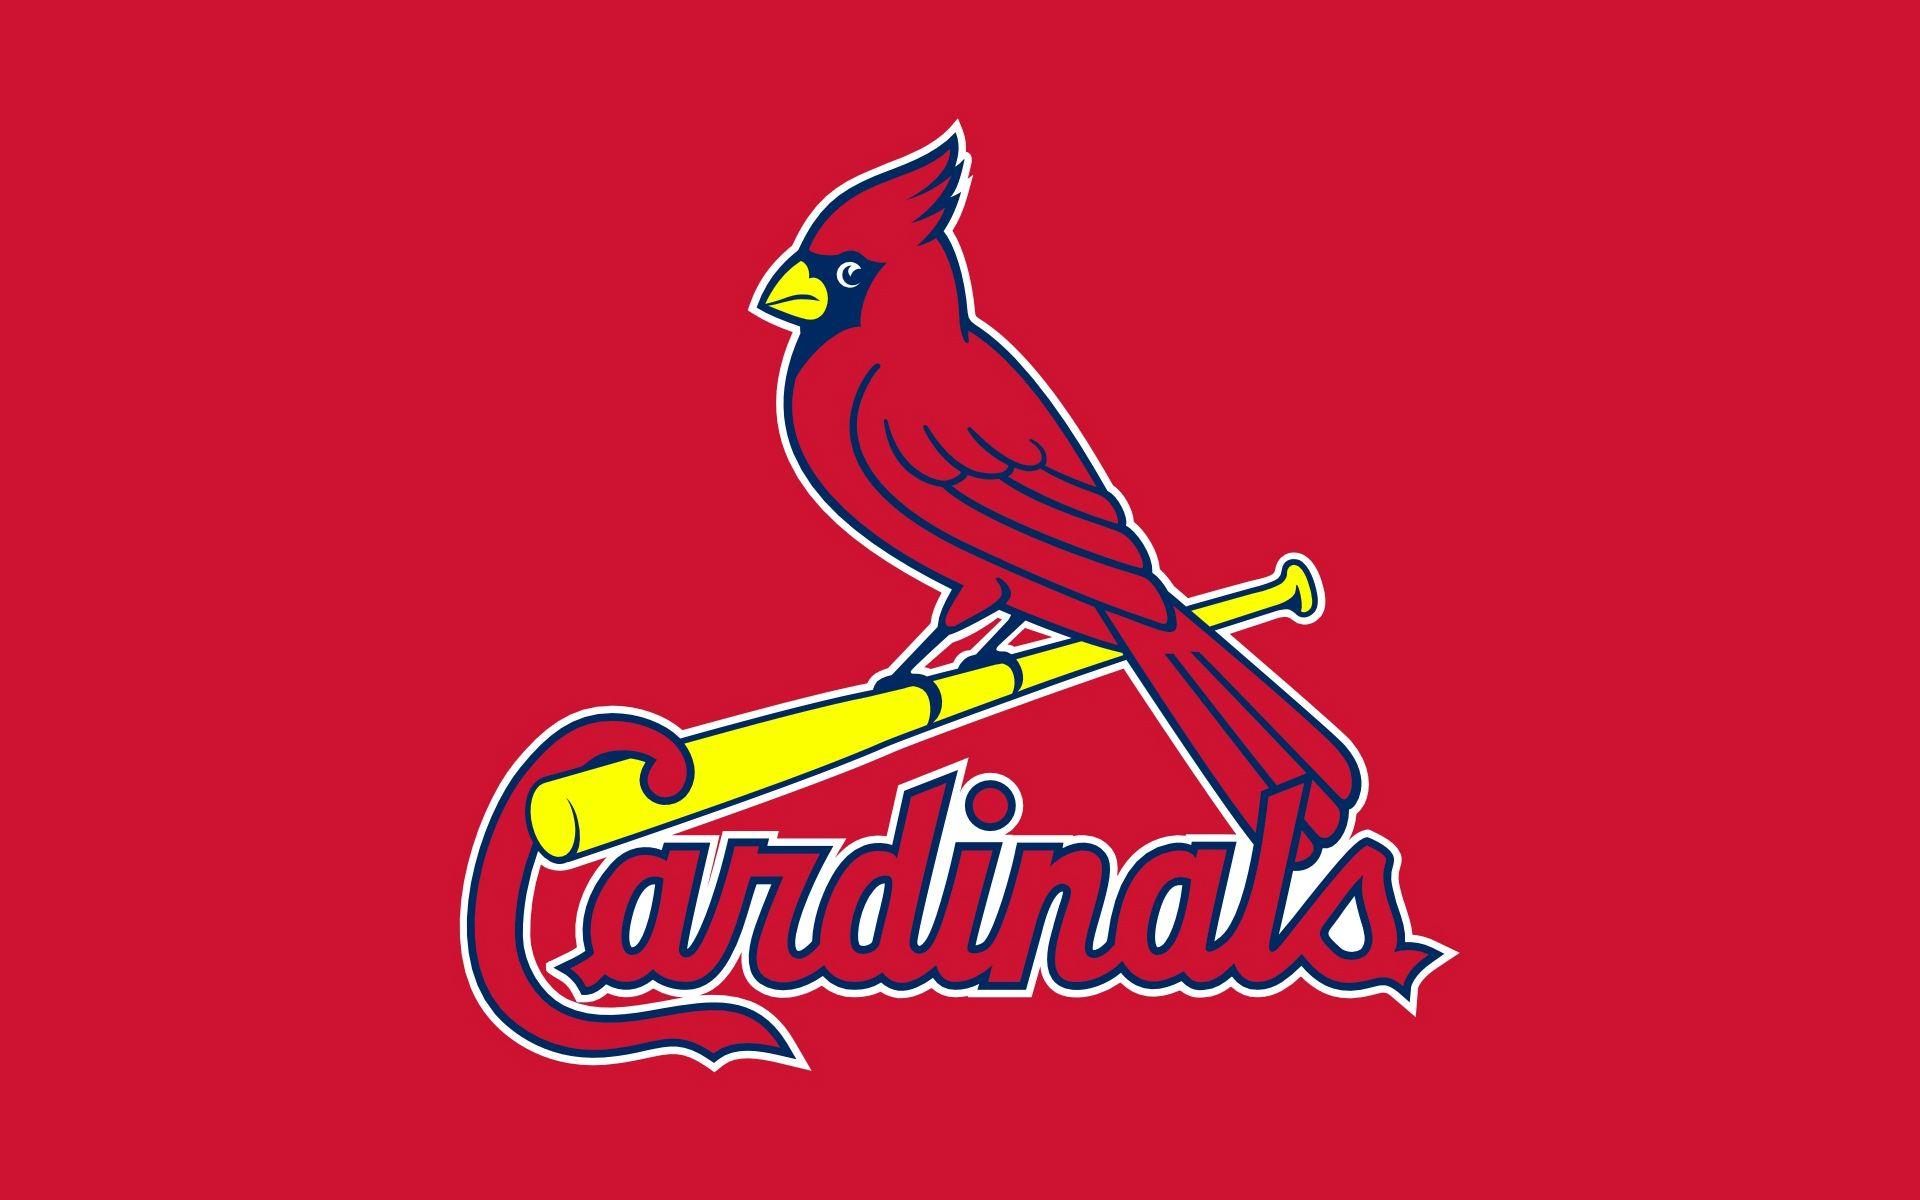 St. Louis Cardinals team